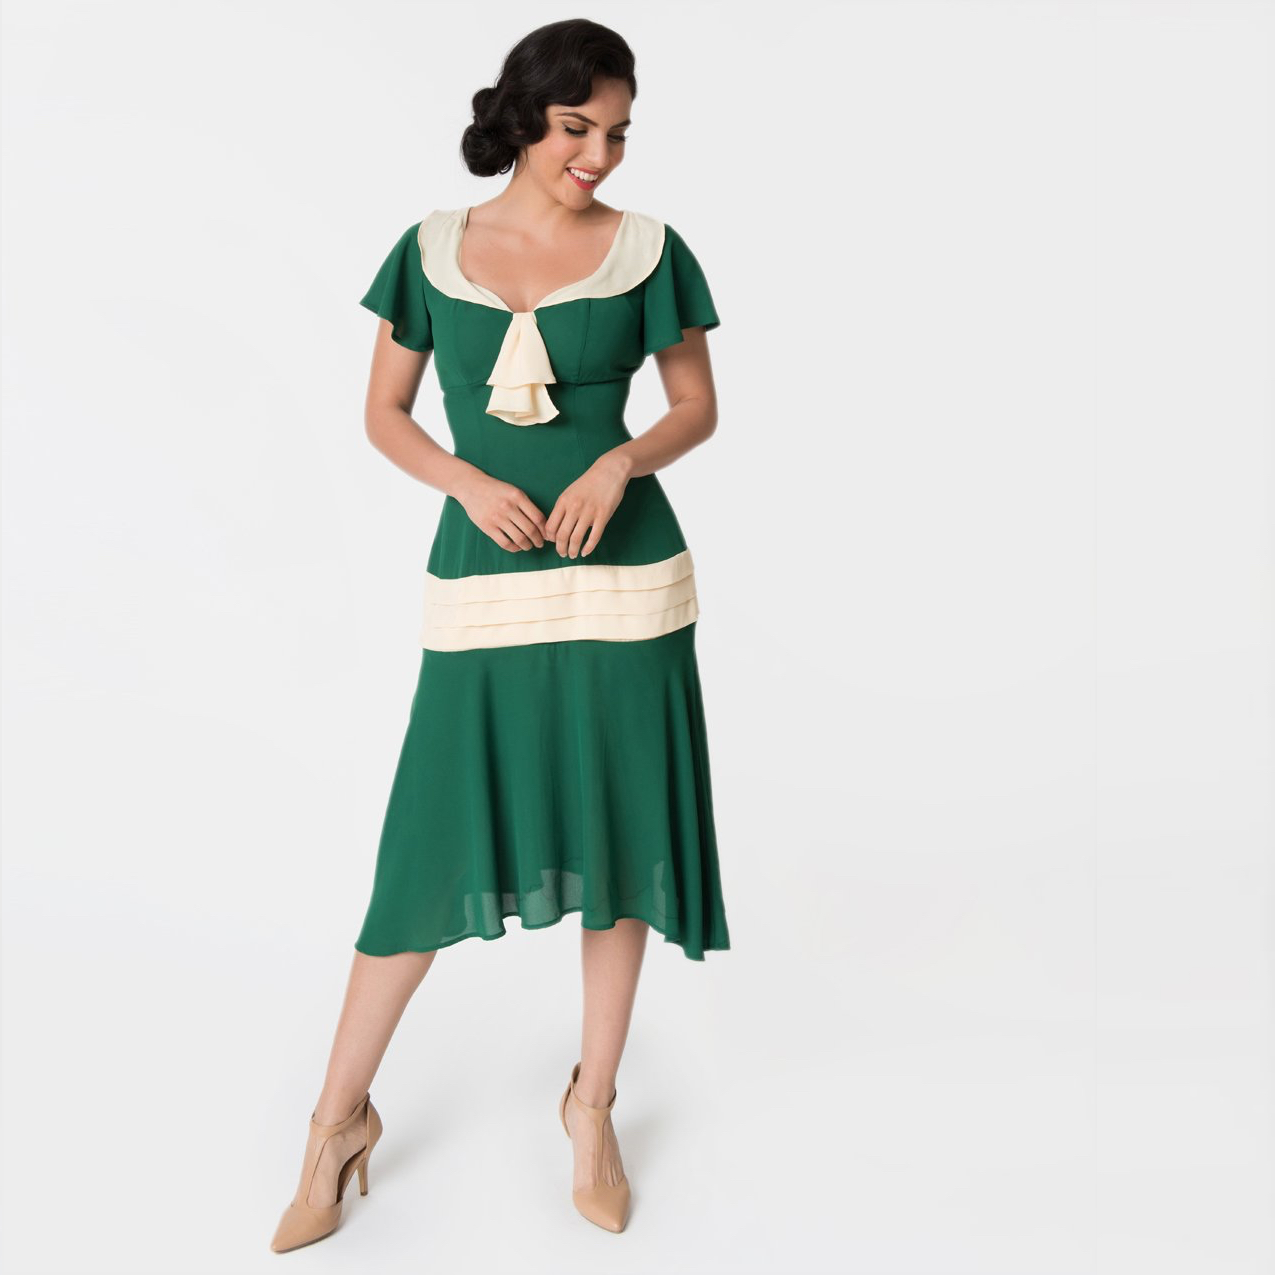 Buy > green 1920s dress > in stock